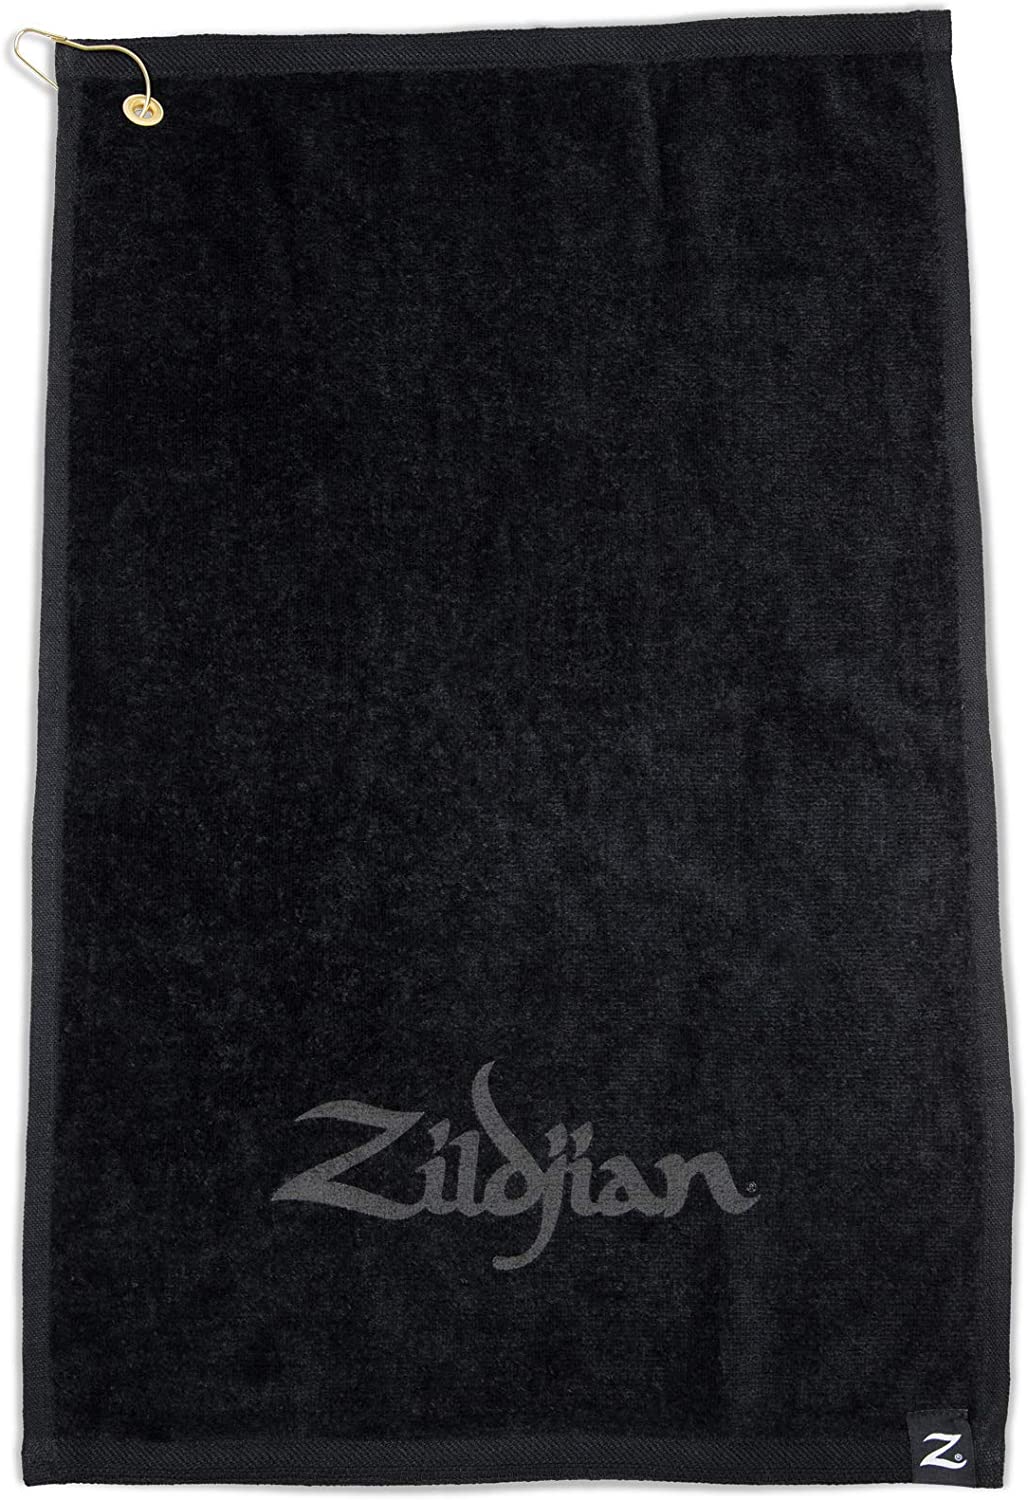 Zildjian Ztowel Black Drummers Towel